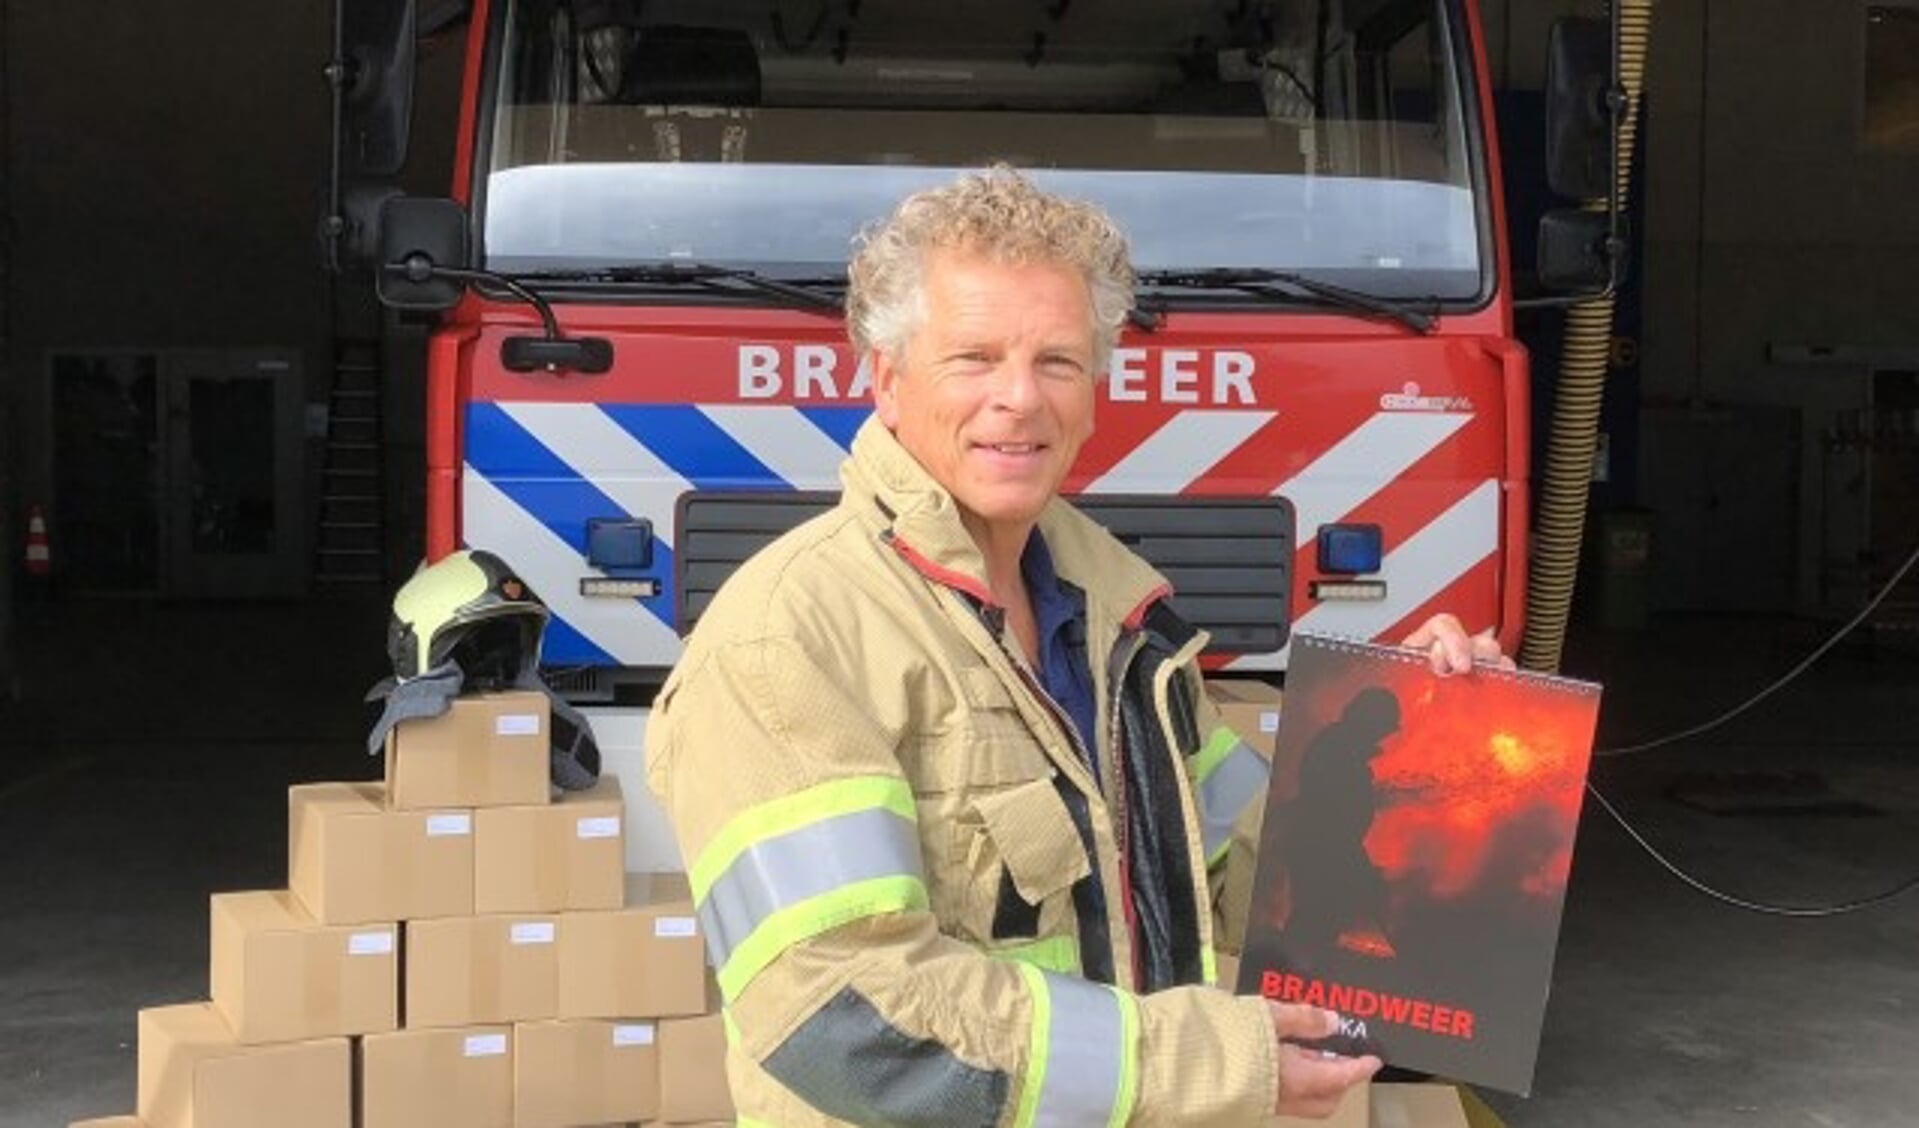 Uljee toont de grote voorraad verjaardagskalenders. De kalenders worden verkocht op bijvoorbeeld open dagen van de brandweer, maar ook aan iedereen die KIKA een warm hart toedraagt.